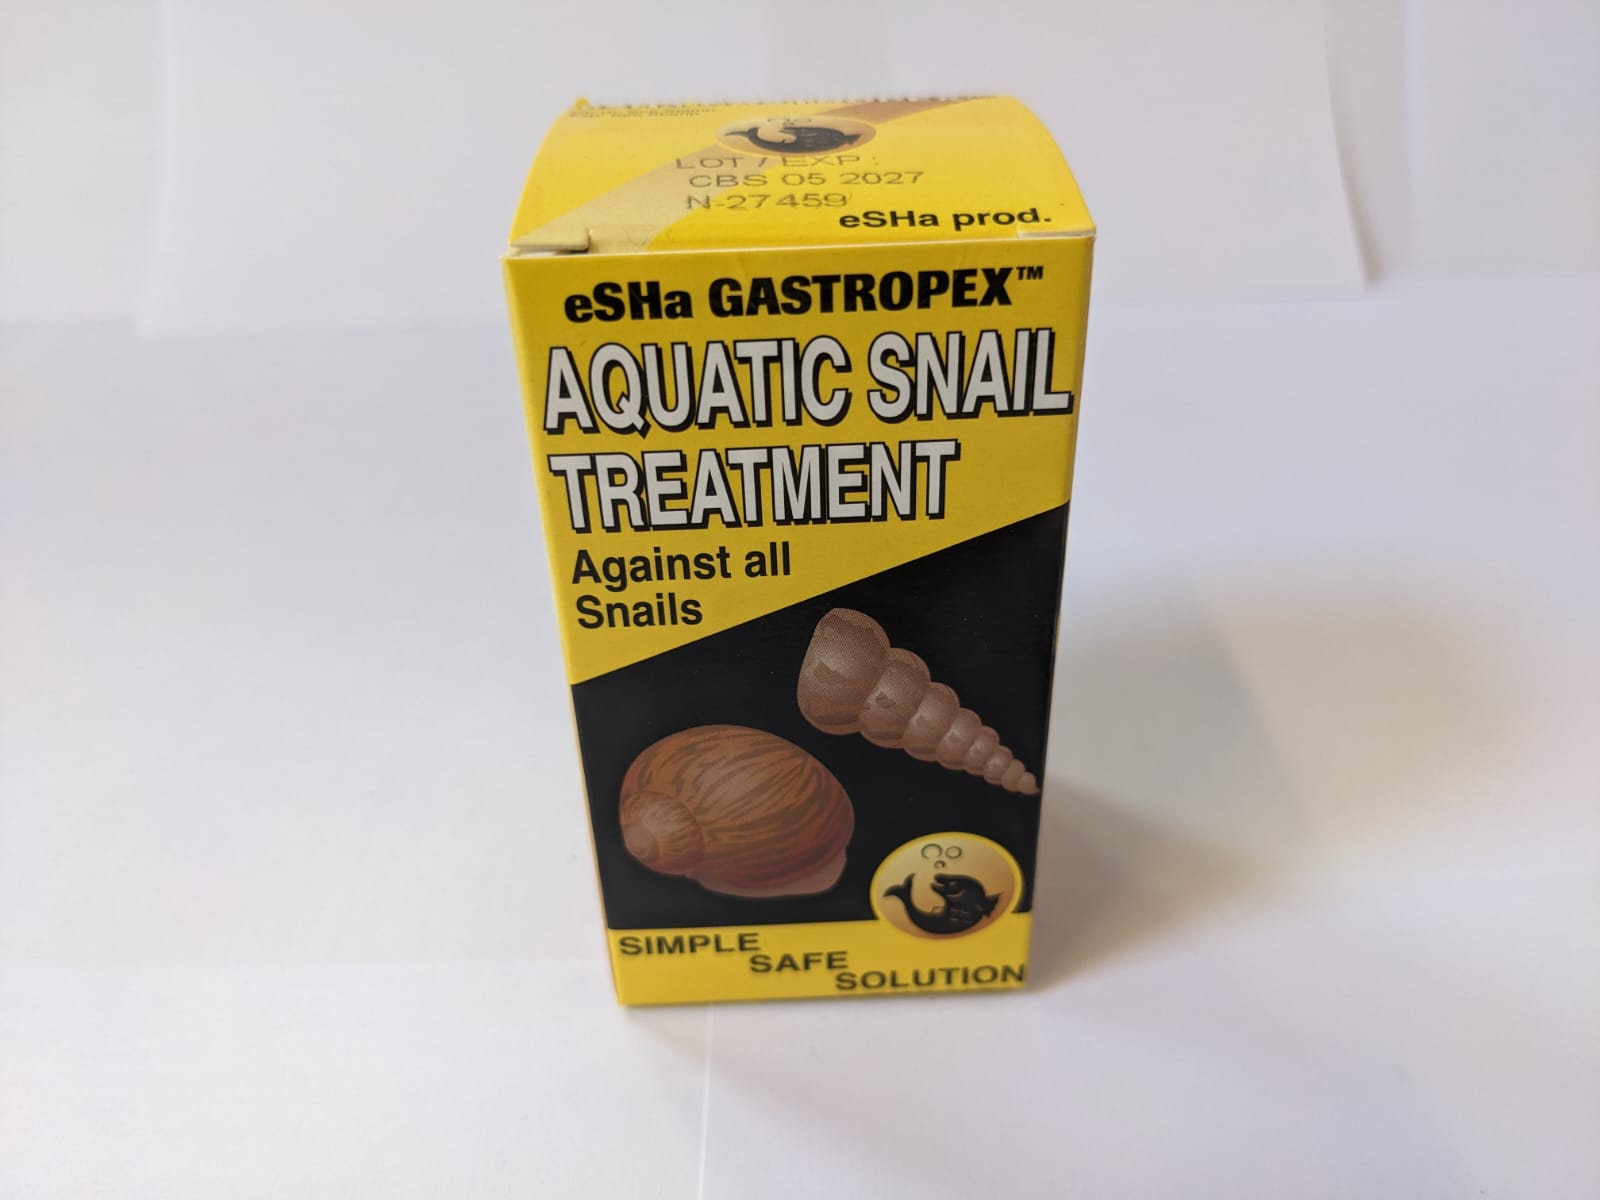 eSHa Gastropex - Aquatic Snail Treatment